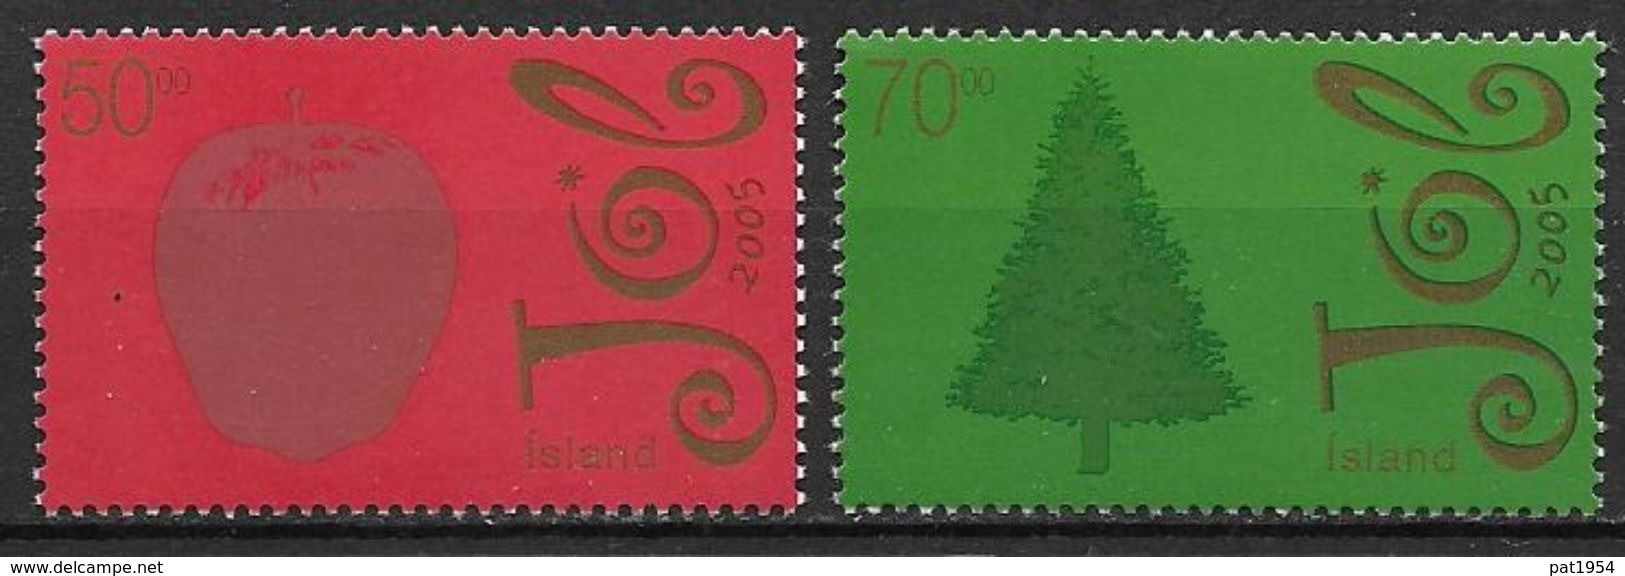 Islande 2005 N°1041/1042 Neufs** Noël - Ungebraucht